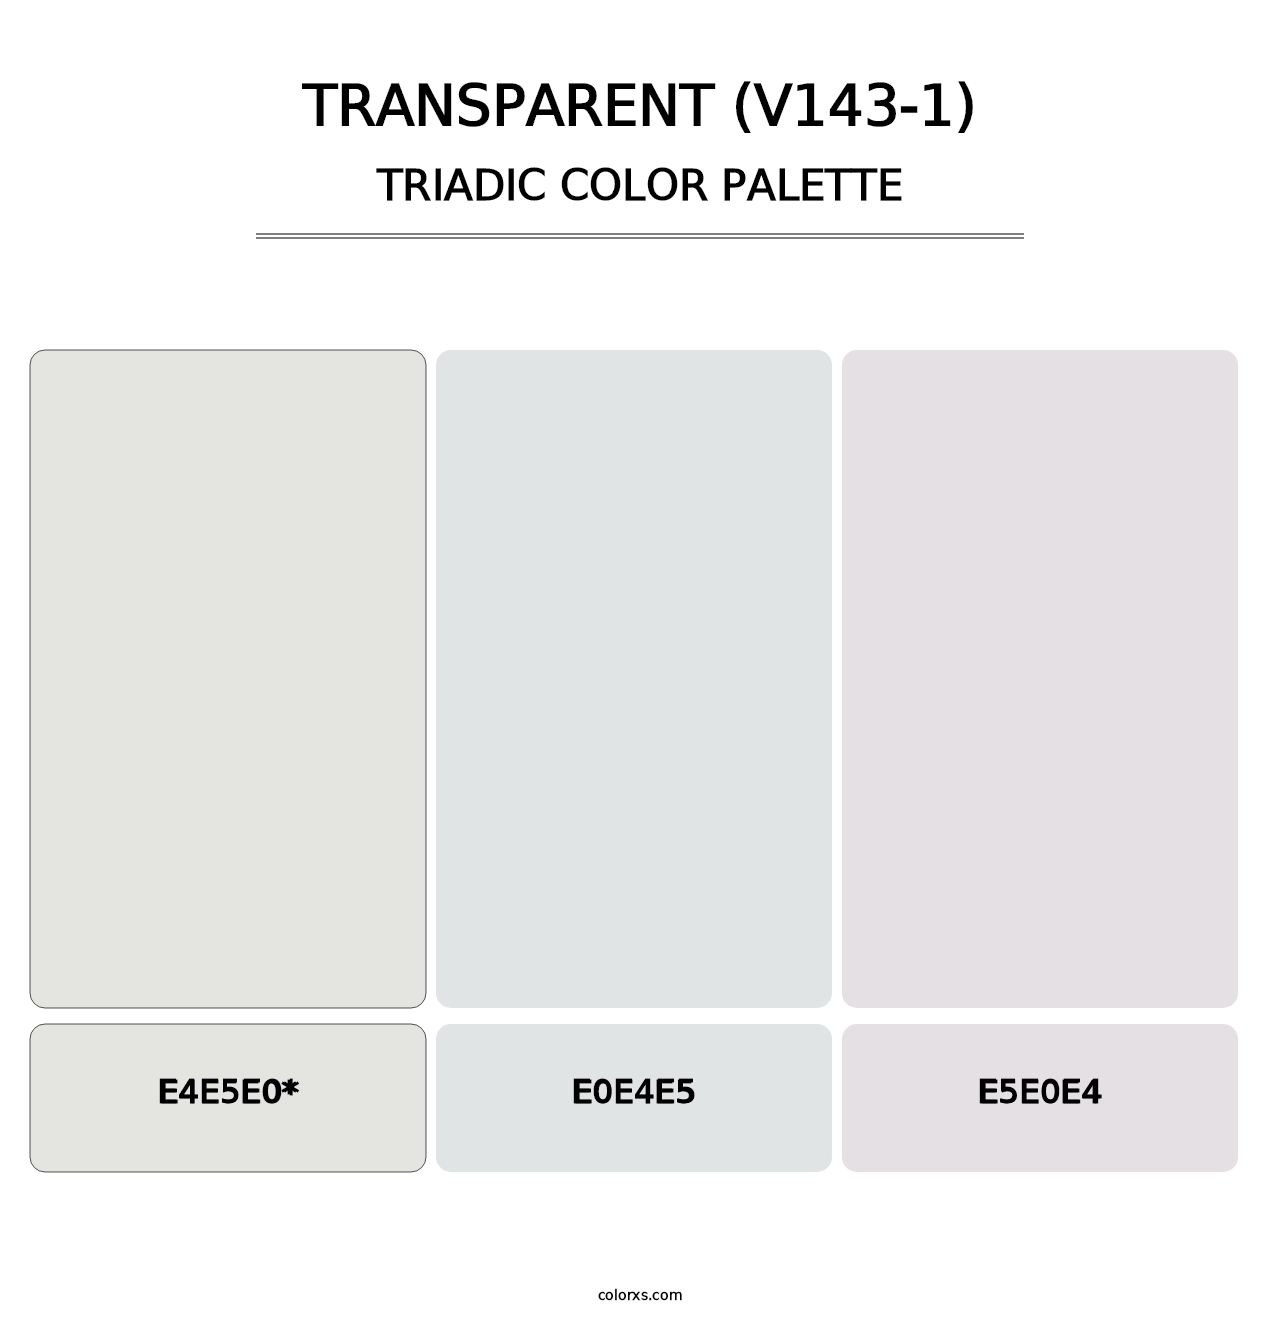 Transparent (V143-1) - Triadic Color Palette